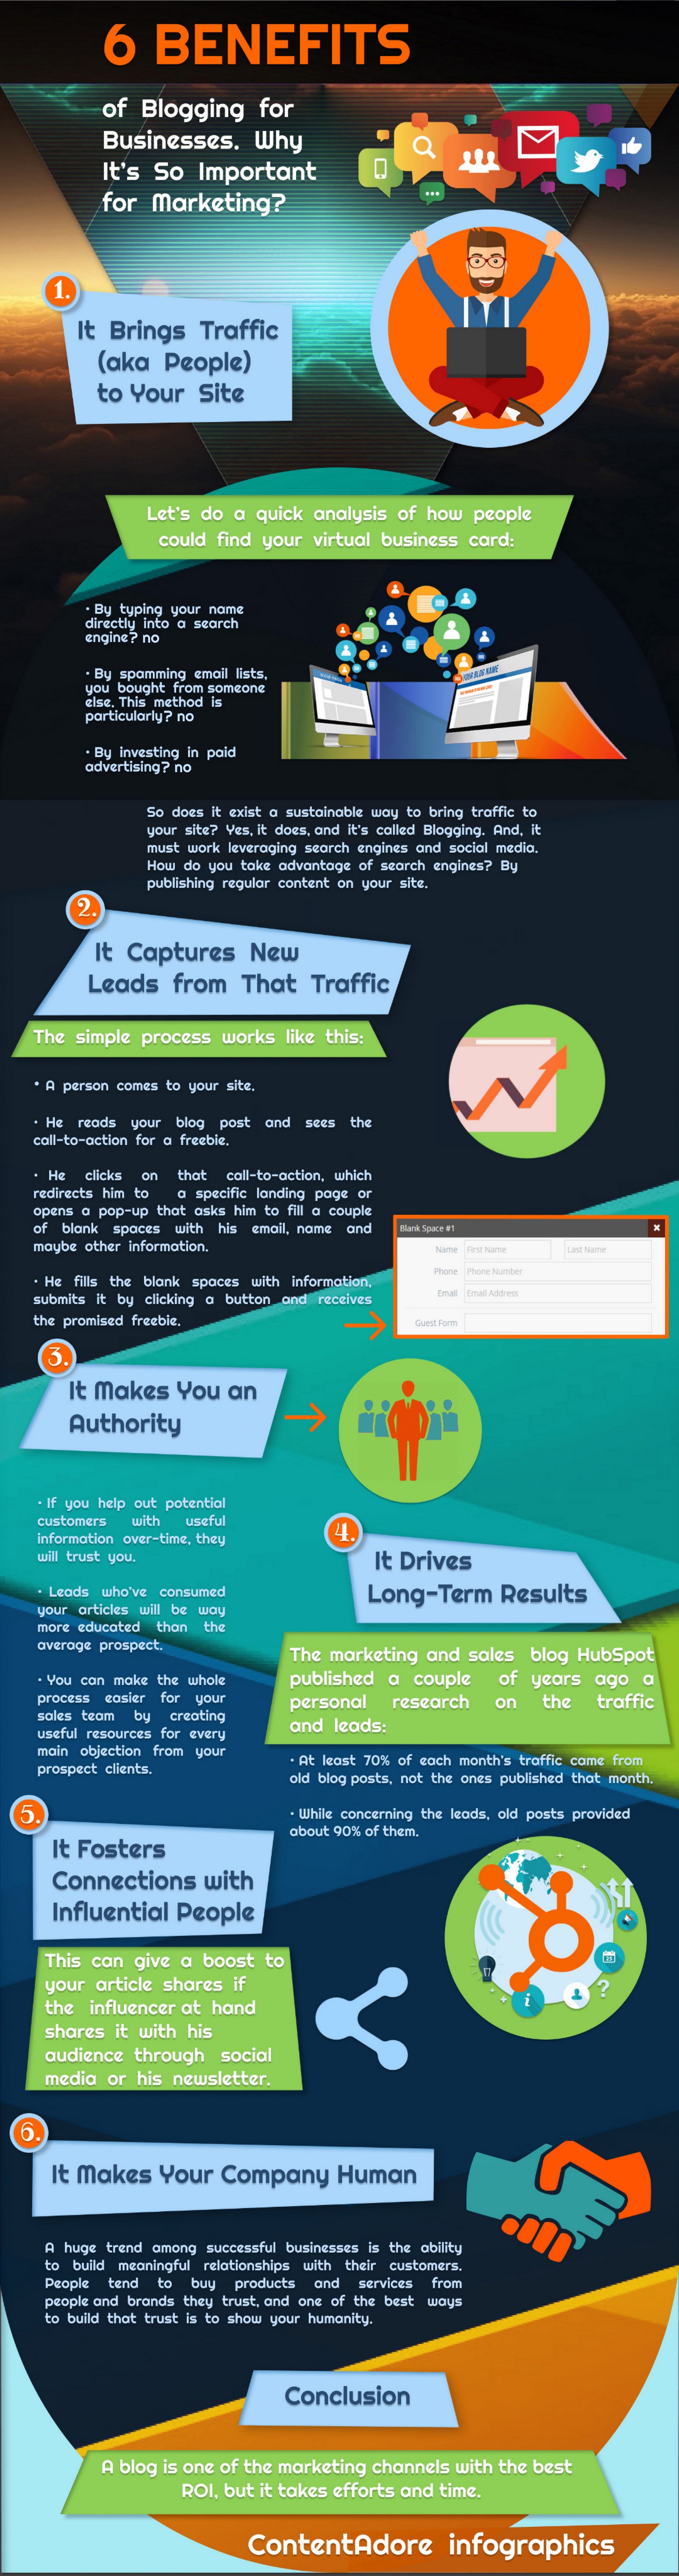 Изображение из 6 преимуществ ведения блога для бизнеса - Инфографика ContentAdore 